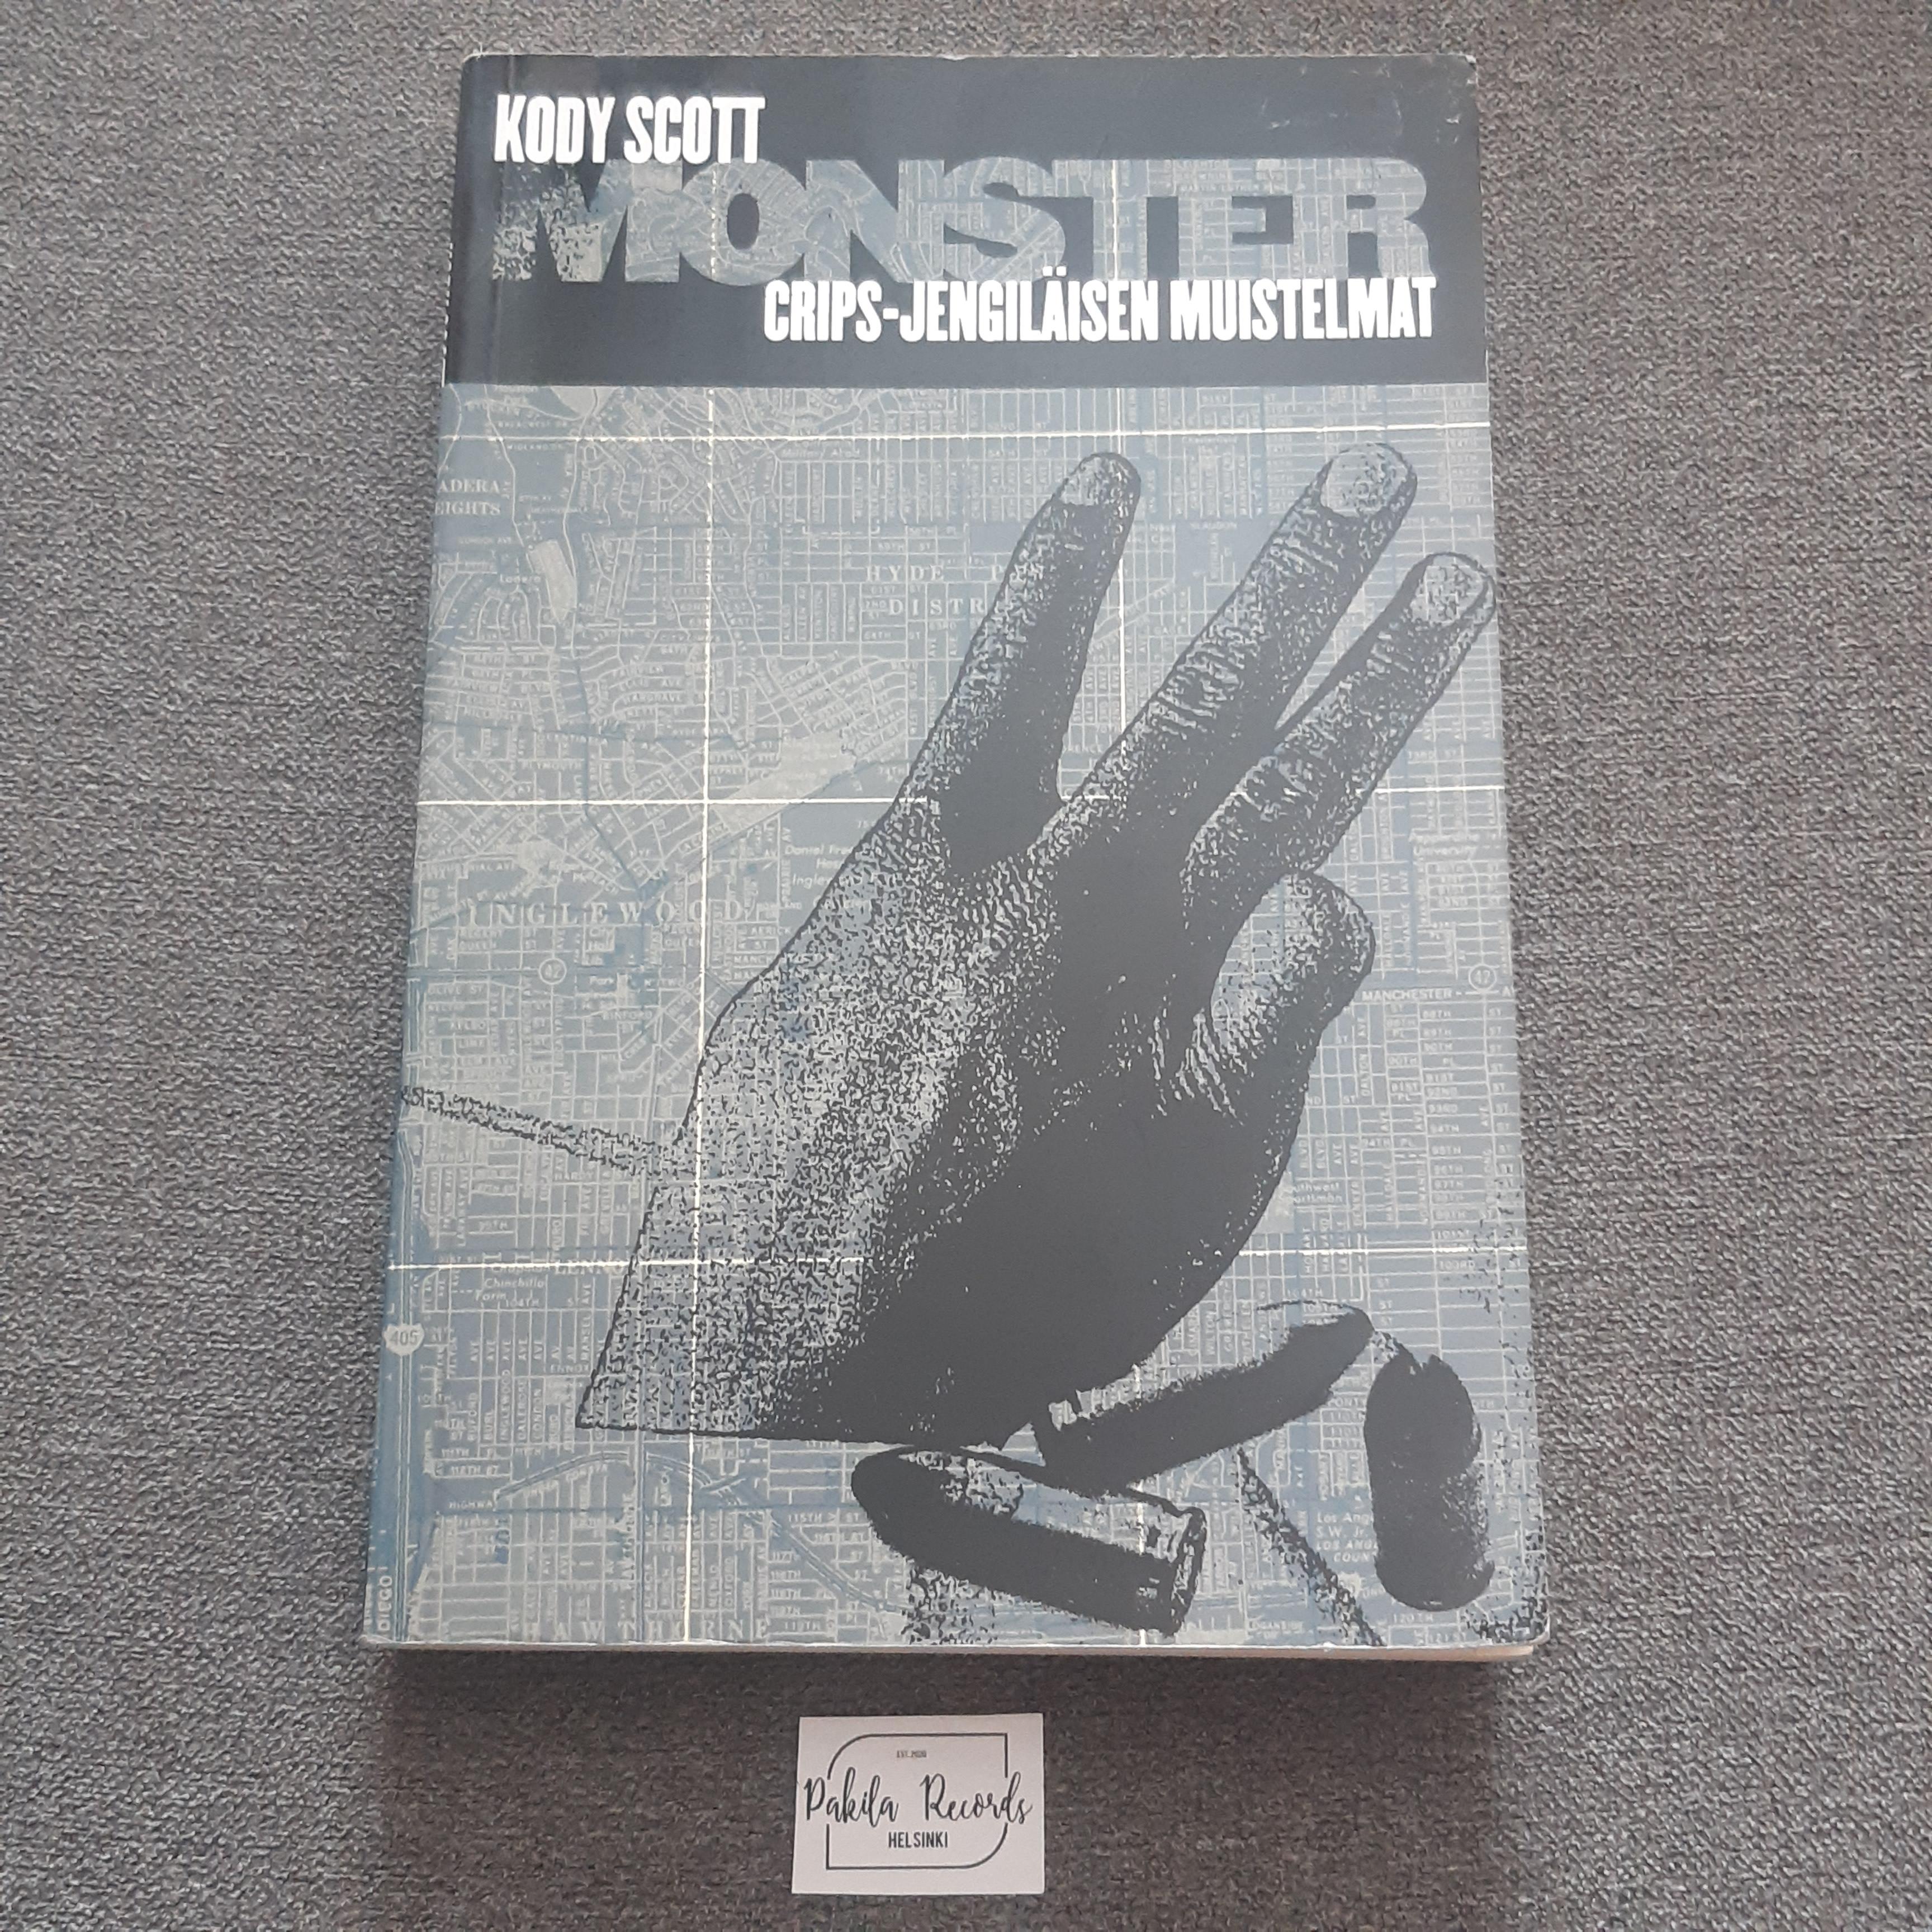 Monster, Crips-jengiläisen muistelmat - Kody Scott - Kirja (käytetty)